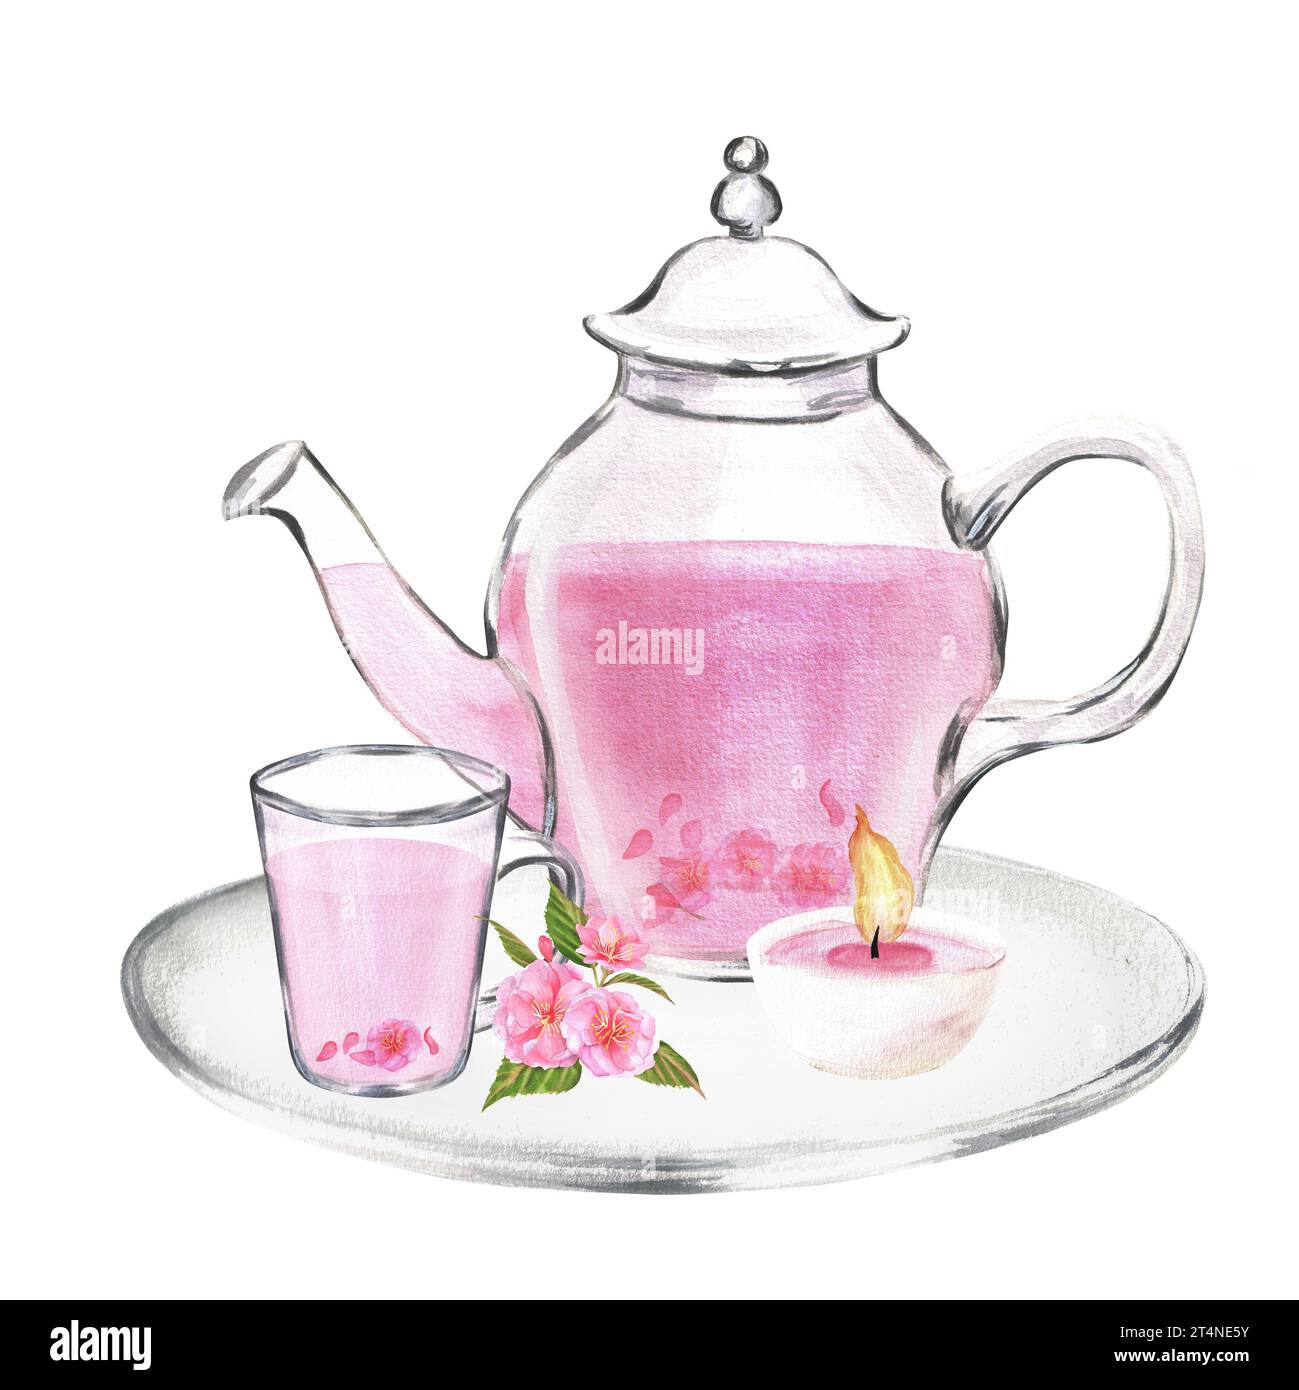 Illustration à l'aquarelle dessinée à la main. Théière en verre et tasse avec thé sakura sur le pâté de verre avec bougie à thé et fleurs de sakura Banque D'Images